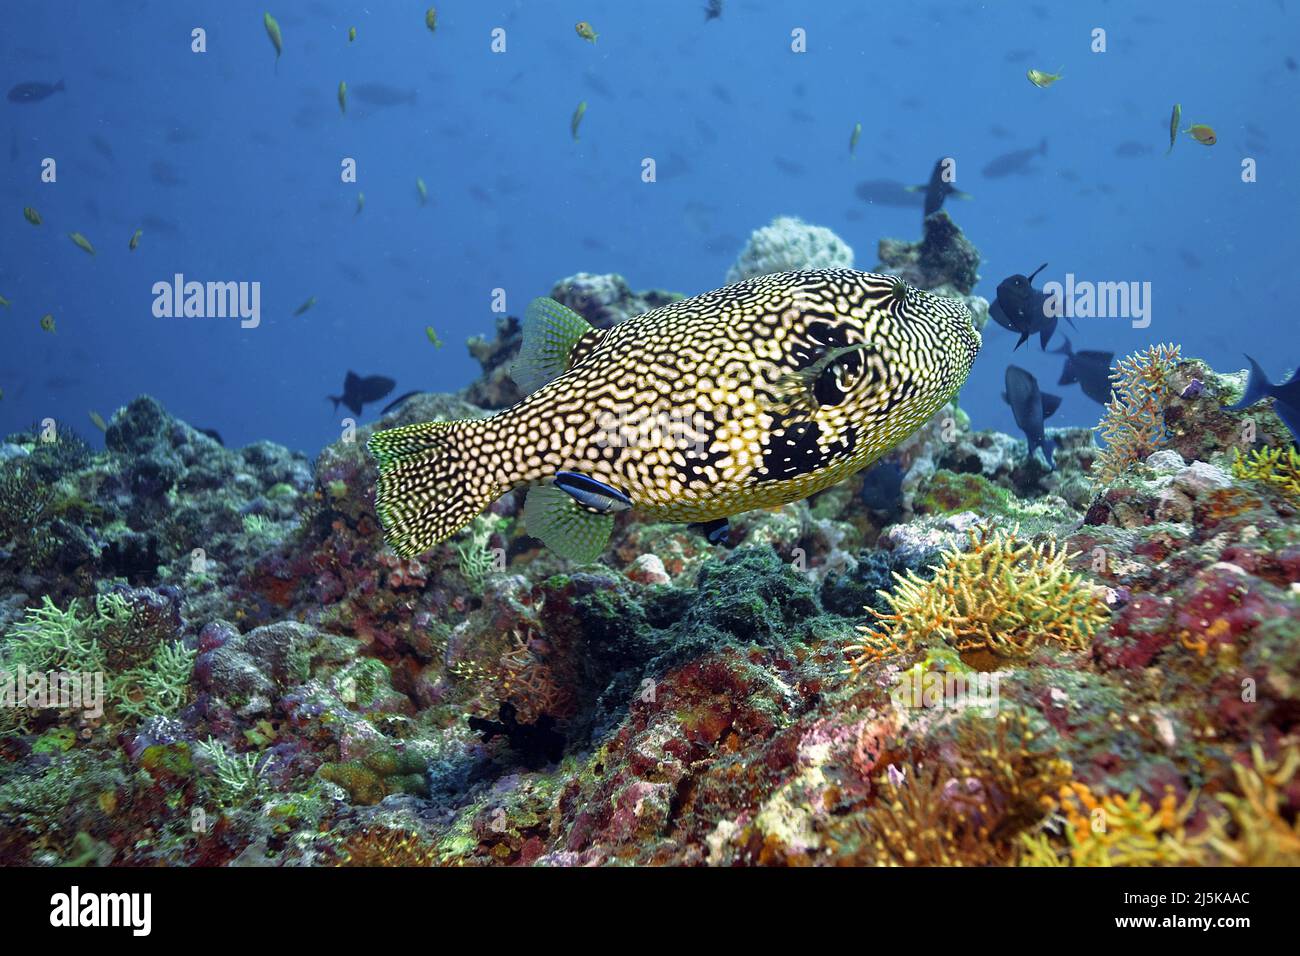 Puffeur étoilé ou pufferfish étoilé (Arothron stellatus), nageant dans un récif de corail, Maldives, Océan Indien, Asie Banque D'Images